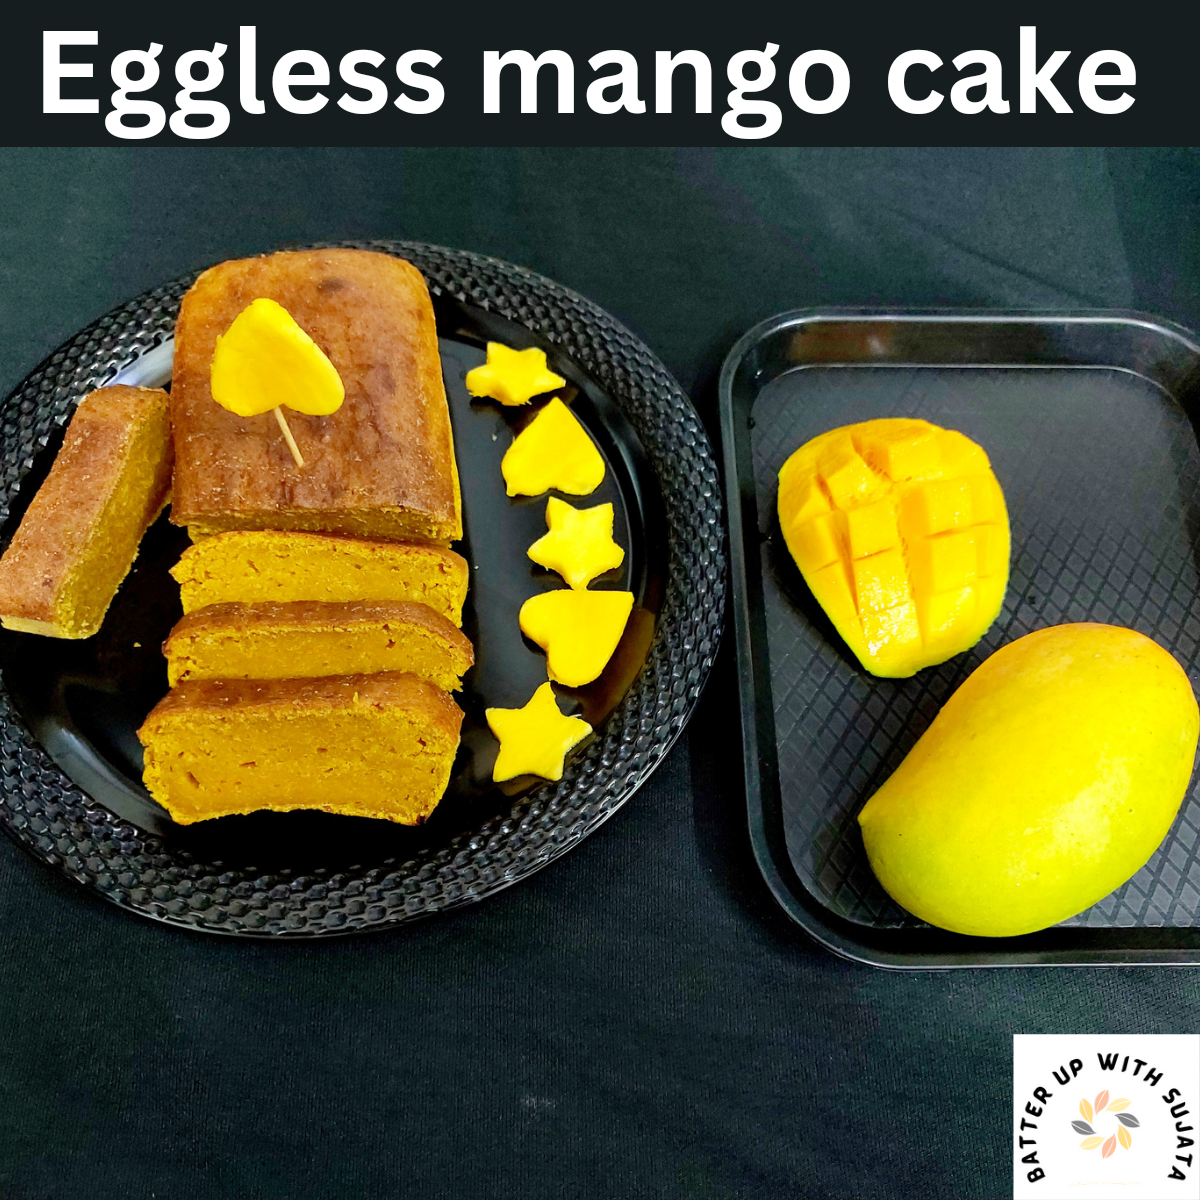 Eggless banana oats cake Recipe by Minakshi Singh - Cookpad